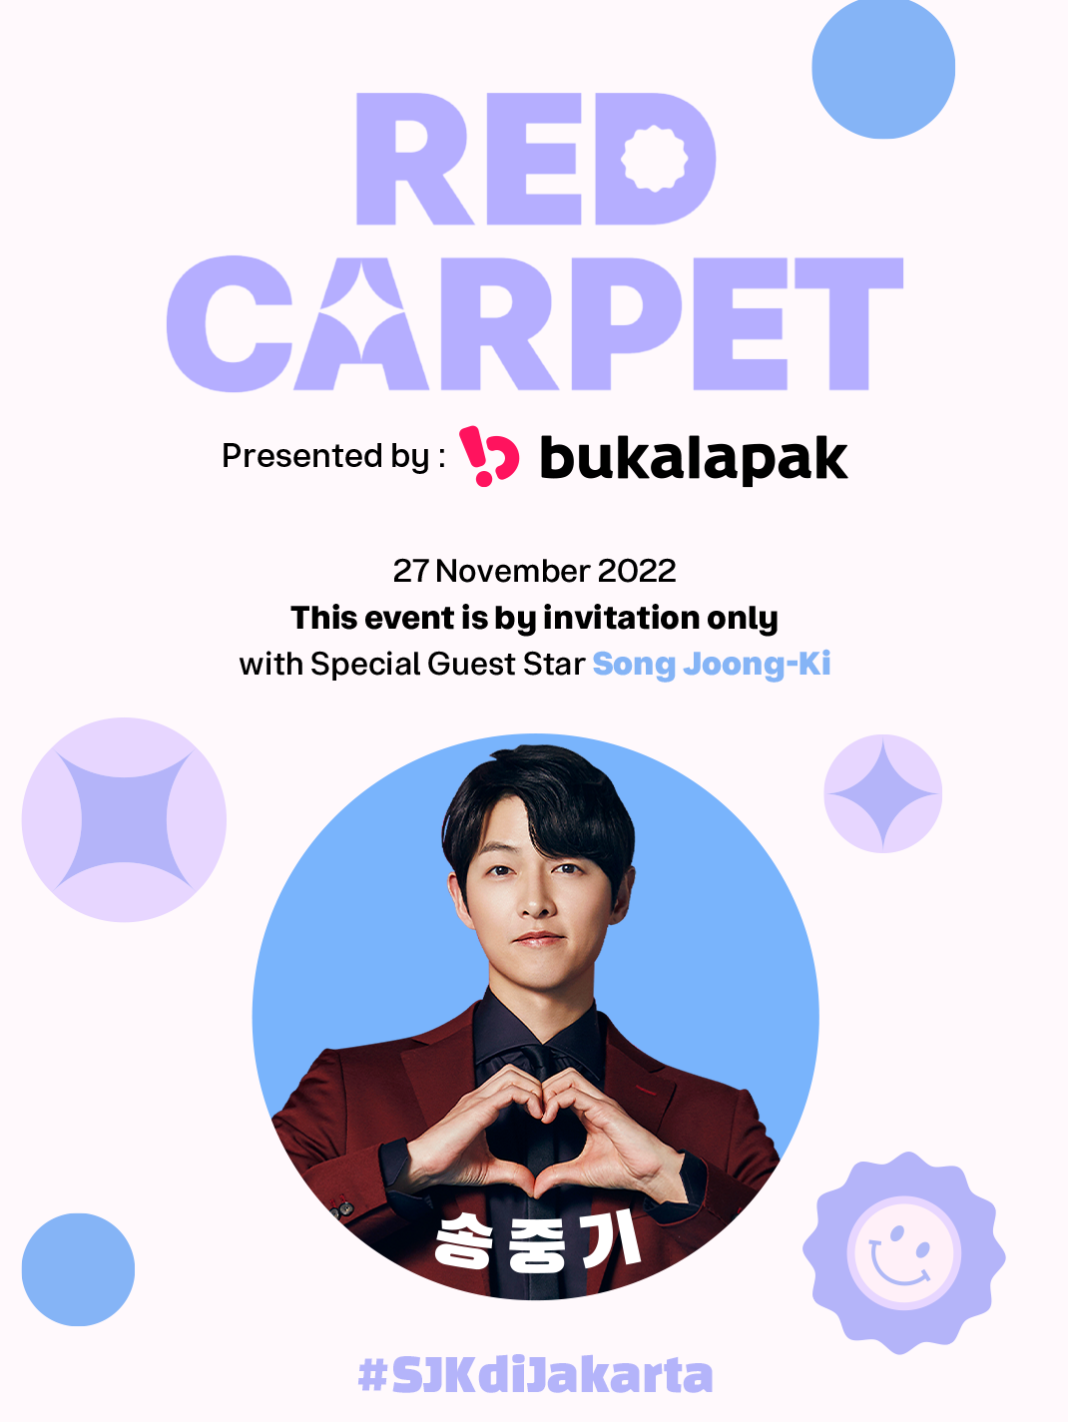 ukalapak akan menggelar acara Red Carpet Presented by Bukalapak dengan special guest star Song Joong-Ki, aktor Korea Selatan papan atas sekaligus Brand Ambassador Bukalapak